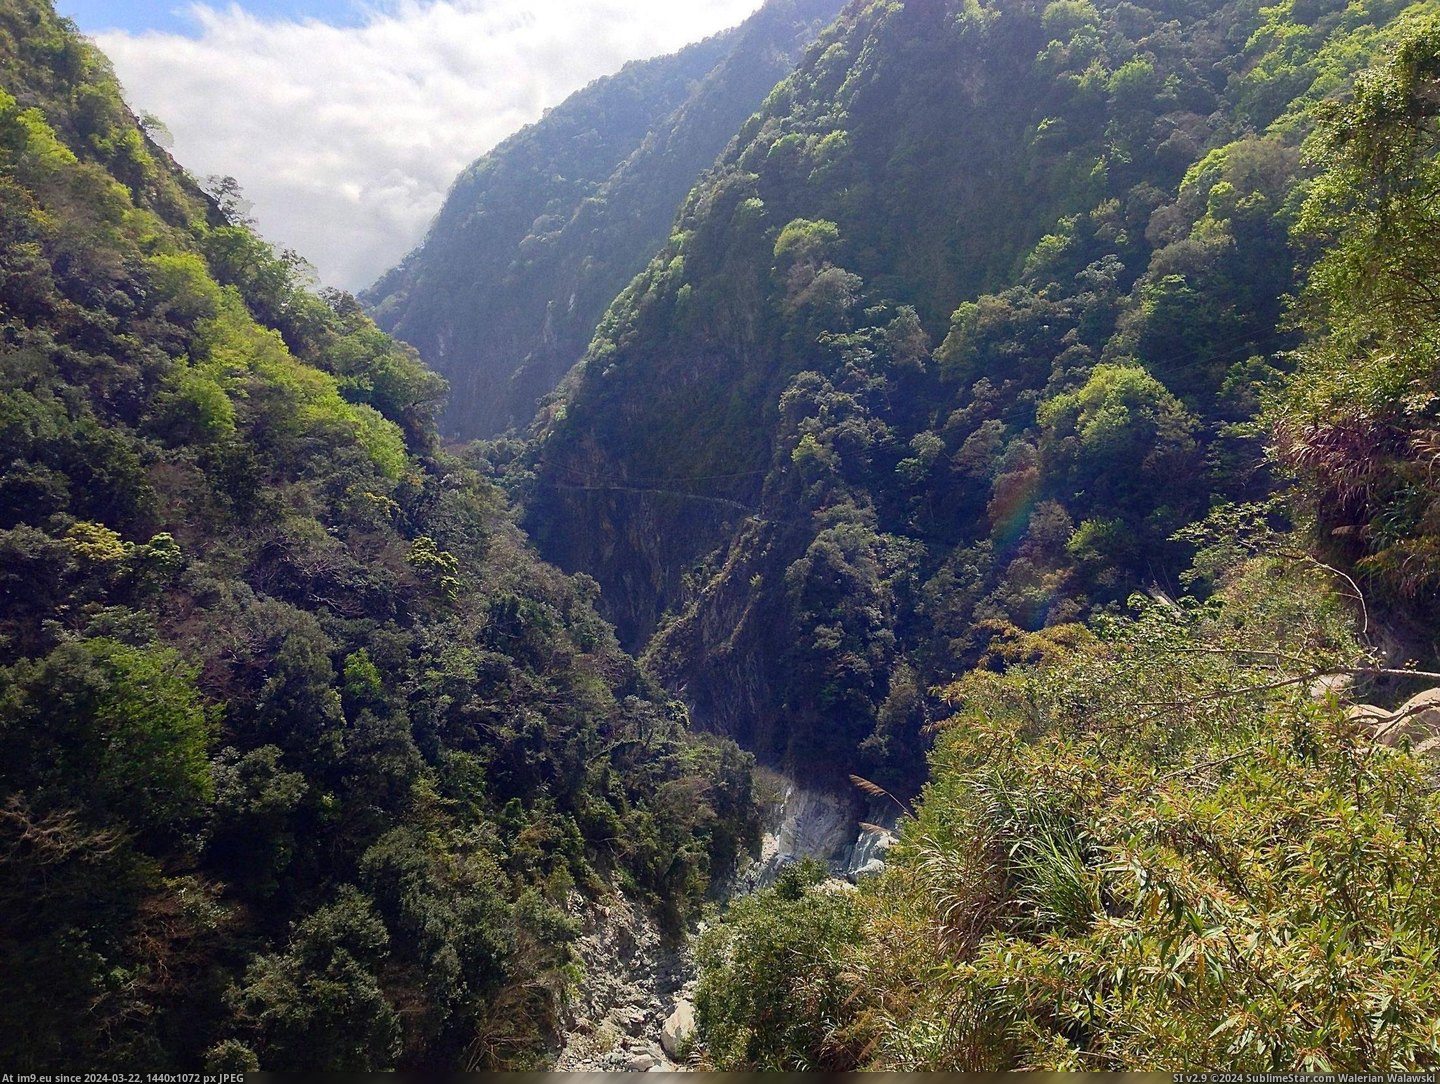 #Hiking #Taiwan #Taroko #Gorge [Earthporn] OC- Taken while hiking in Taroko Gorge, Taiwan. [2203 x 1652] Pic. (Image of album My r/EARTHPORN favs))